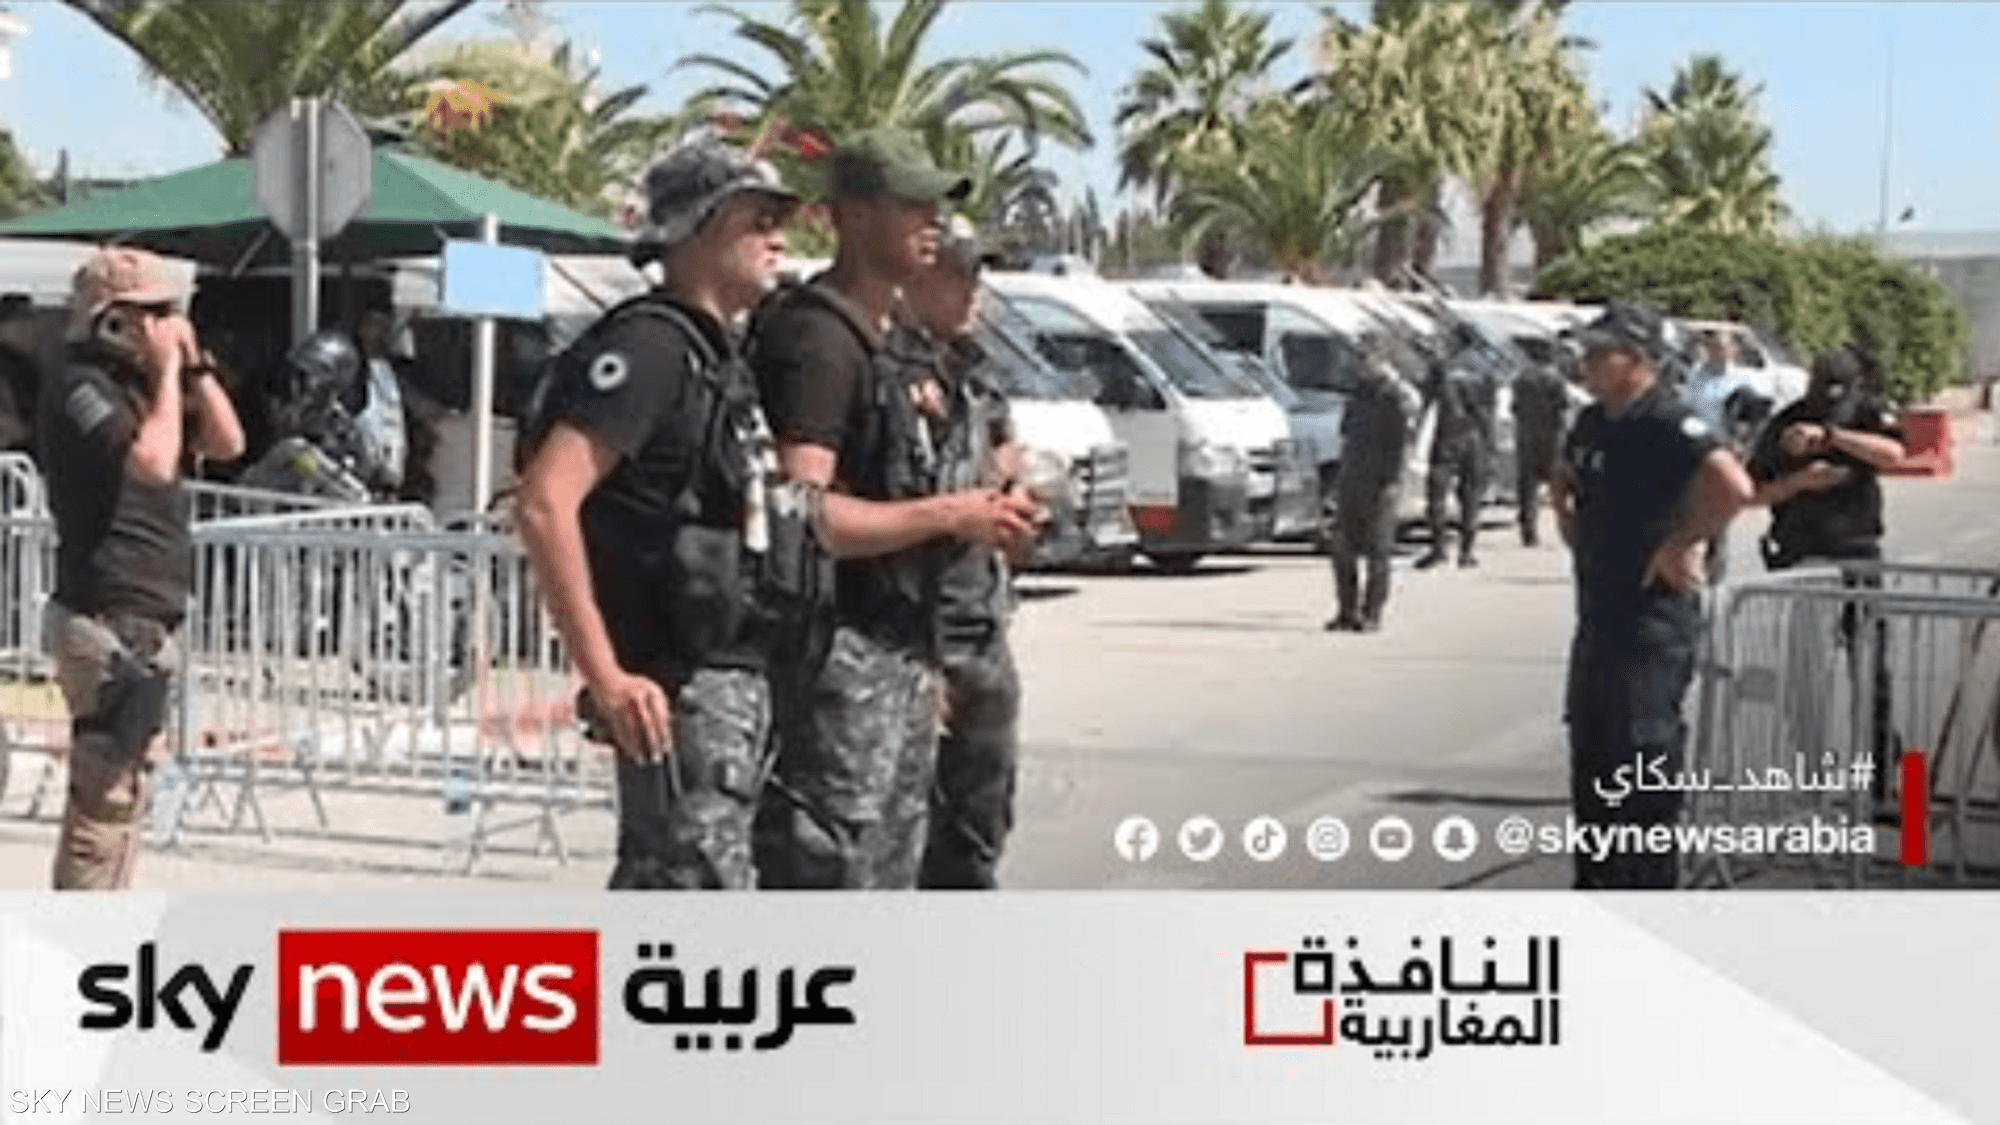 إرهاب الإخوان في تونس يلاحق النشطاء والمثقفين